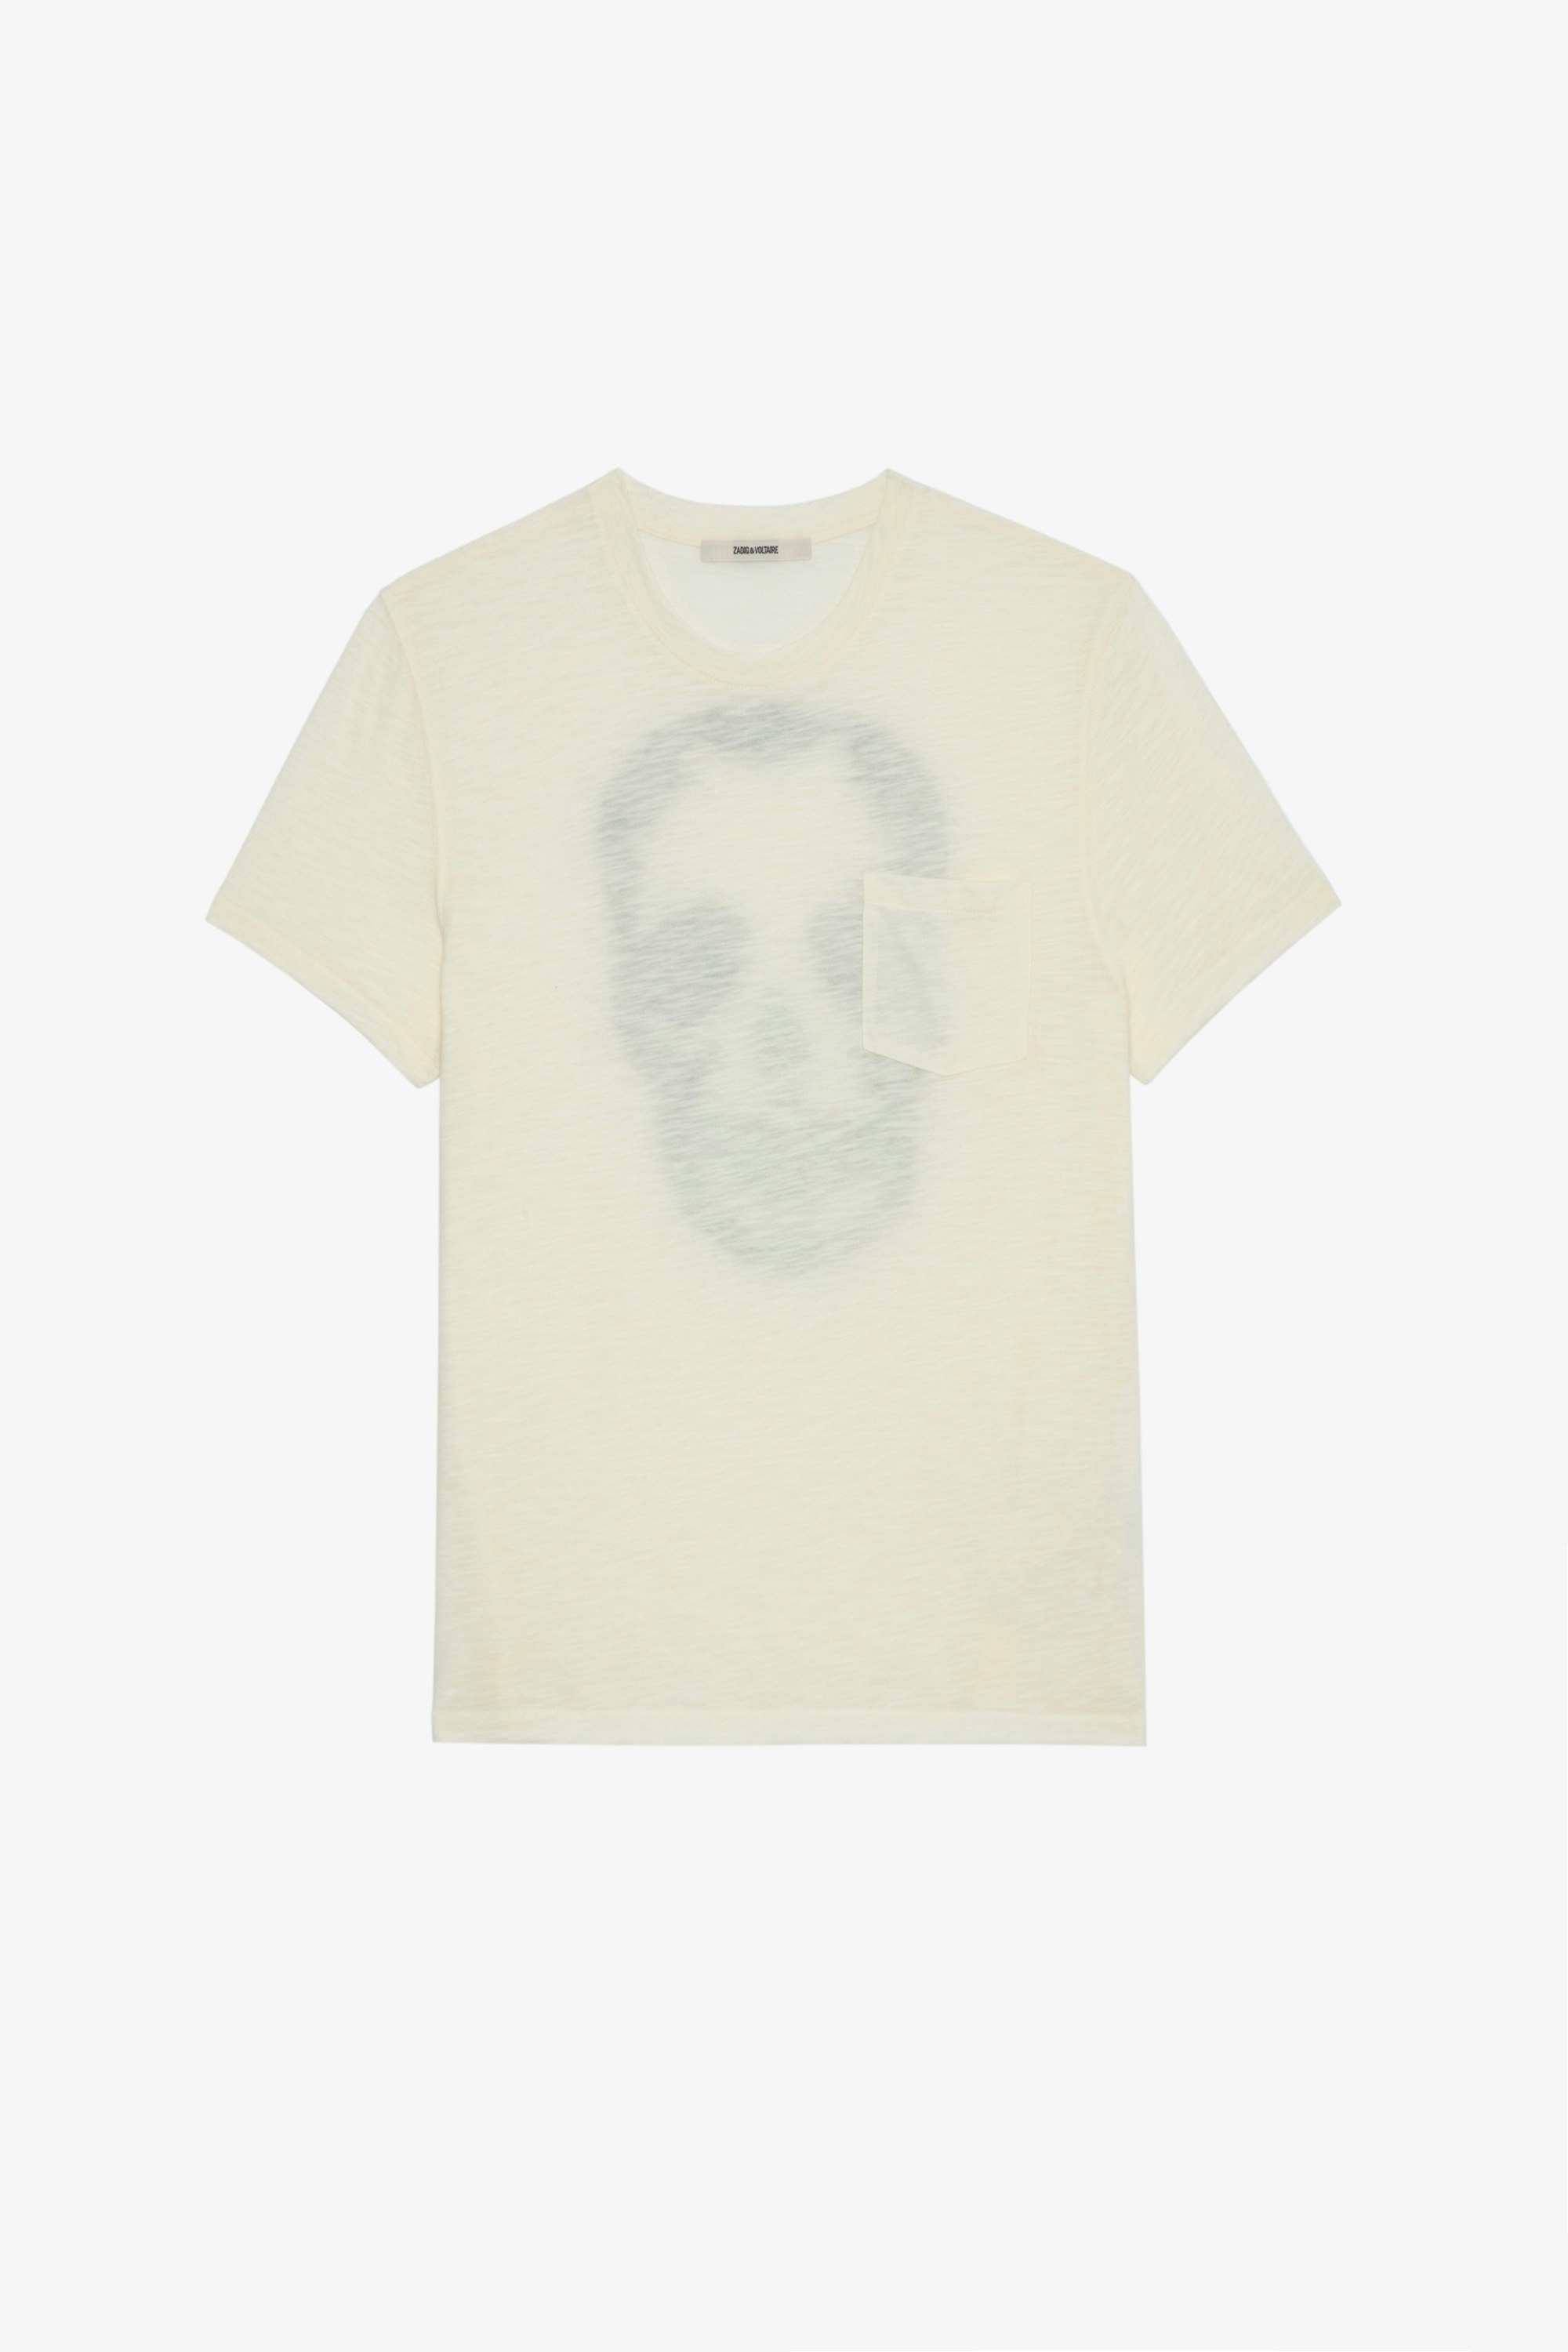 T-shirt Stockholm Flamme T-shirt in cotone fiammato écru decorata con skull sul retro, da uomo